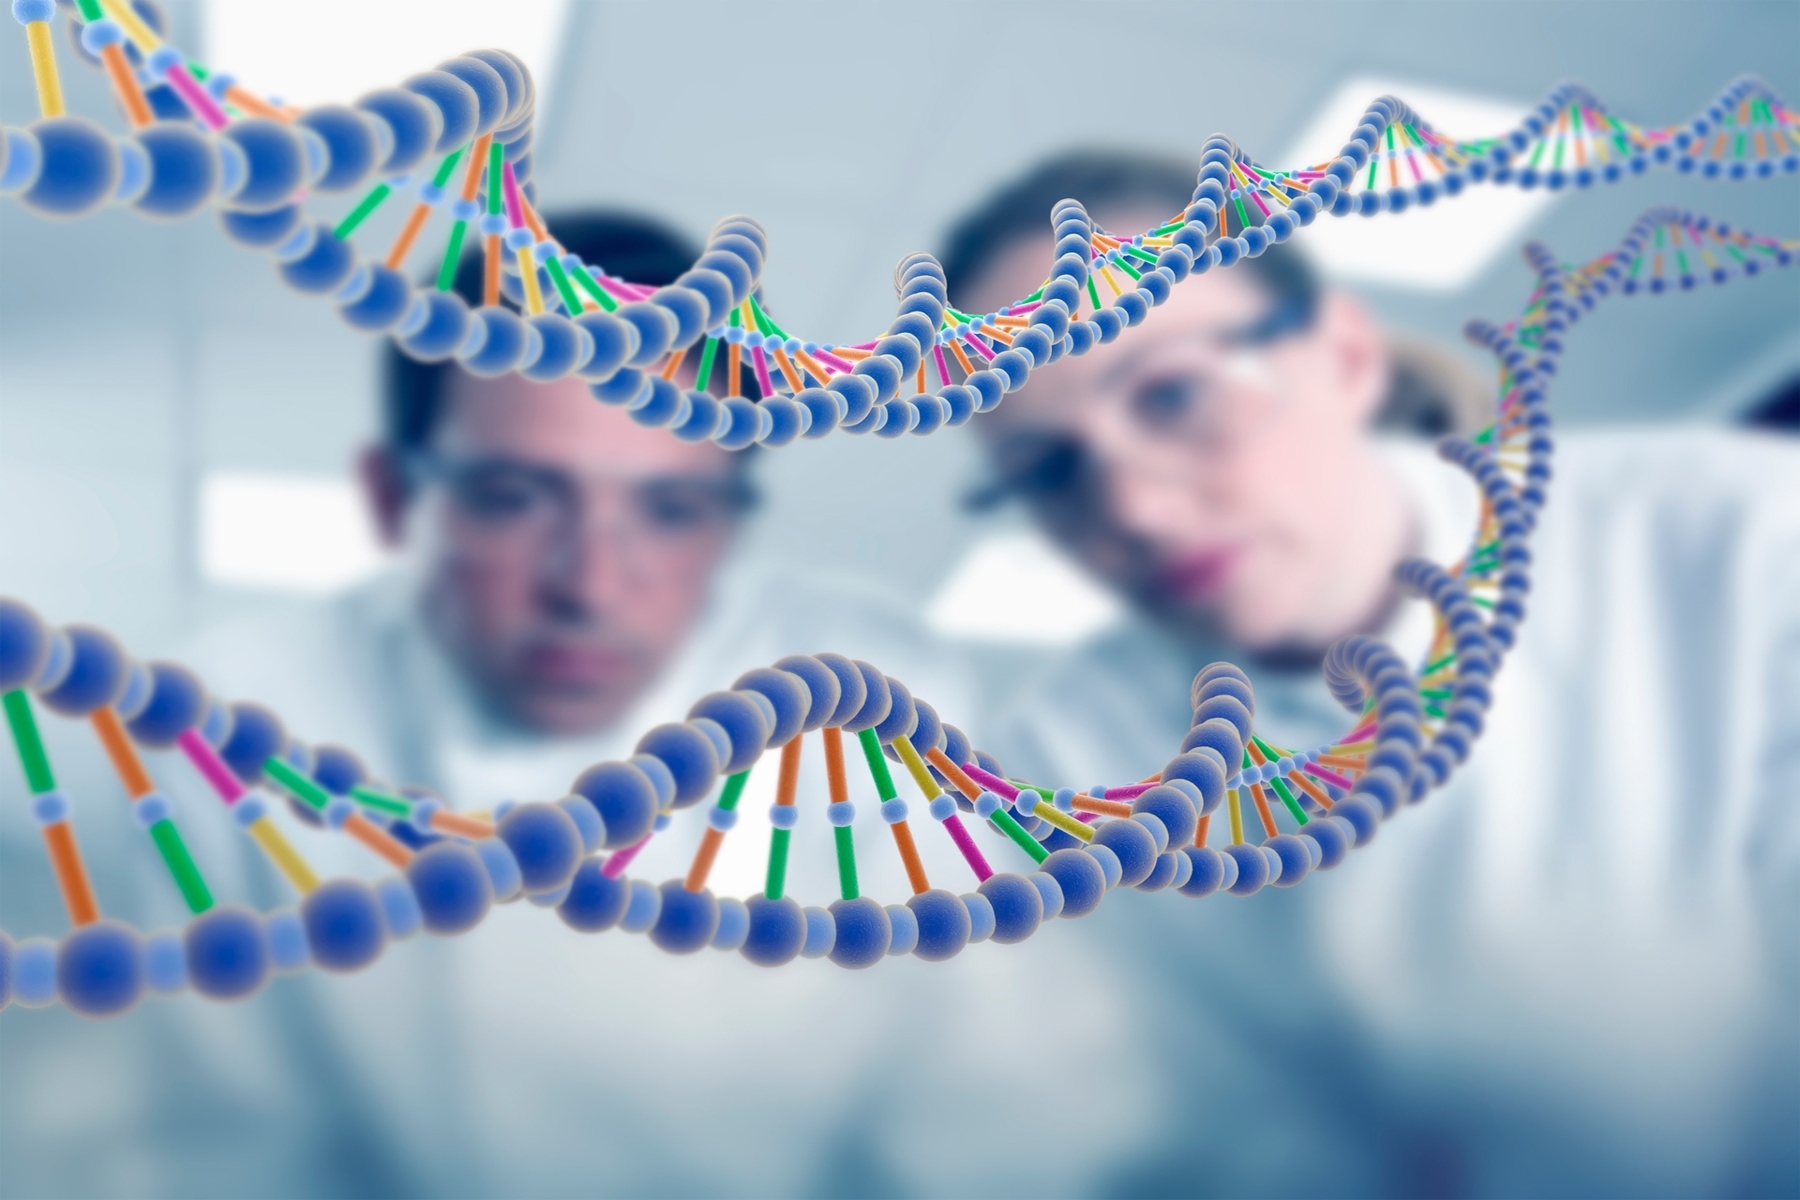 Γονιδίωμα: Αποκωδικοποιήθηκε επιτέλους το πλήρες ανθρώπινο γονιδίωμα